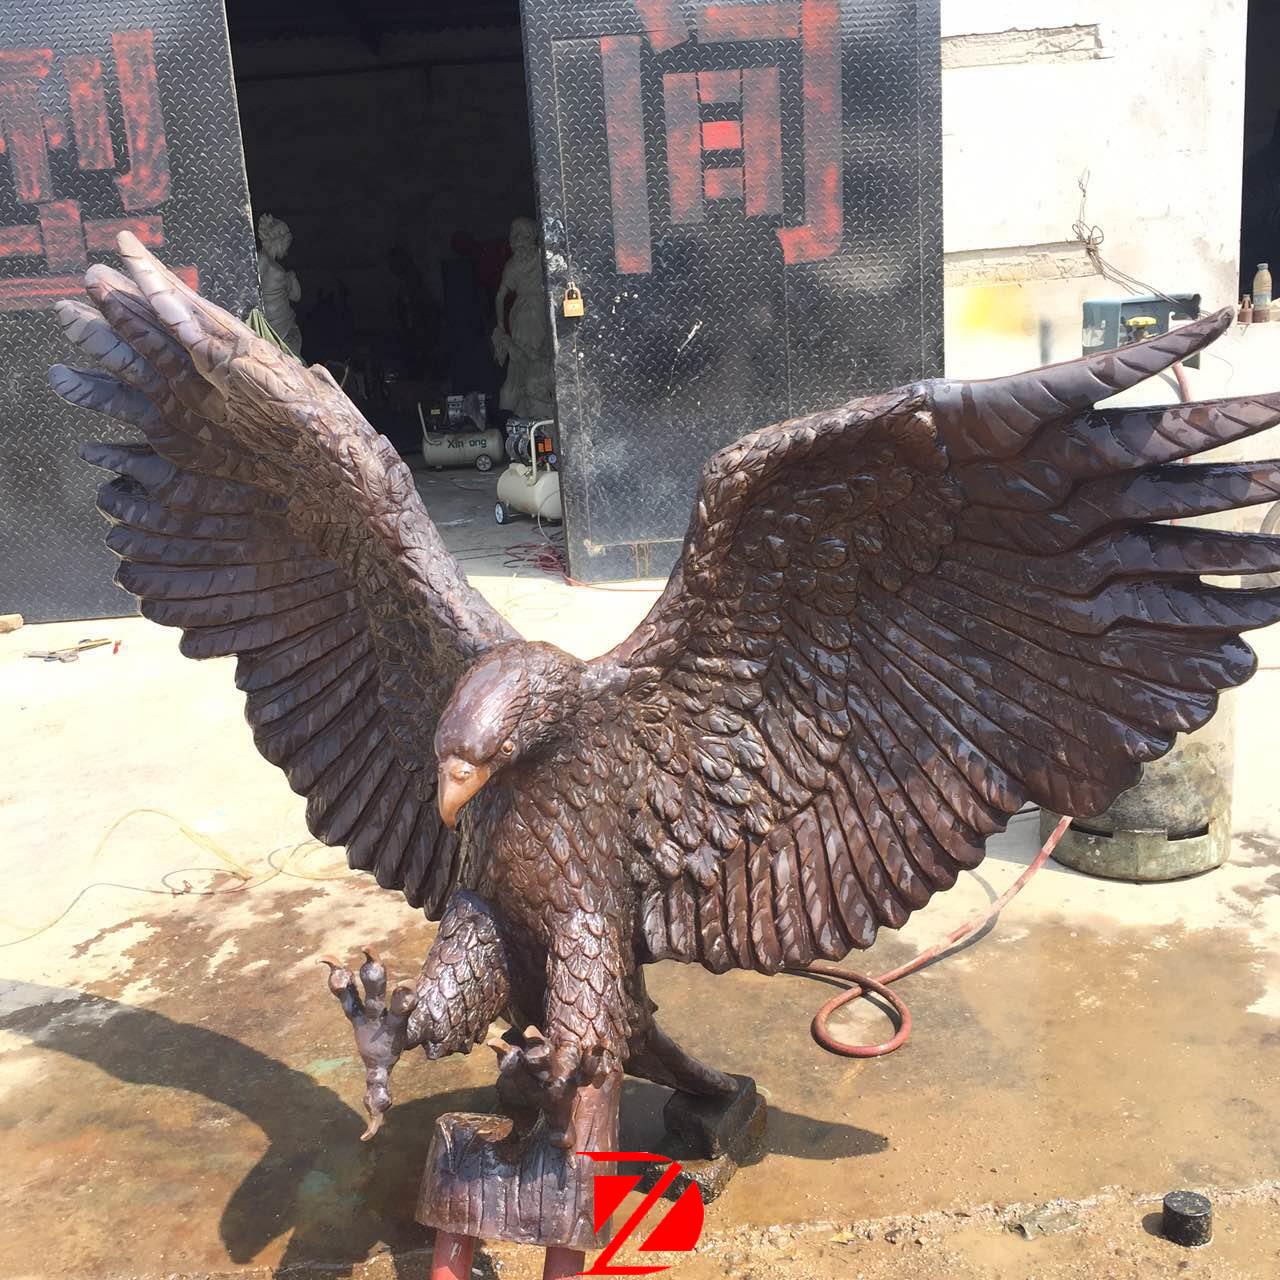 Large eagle statue